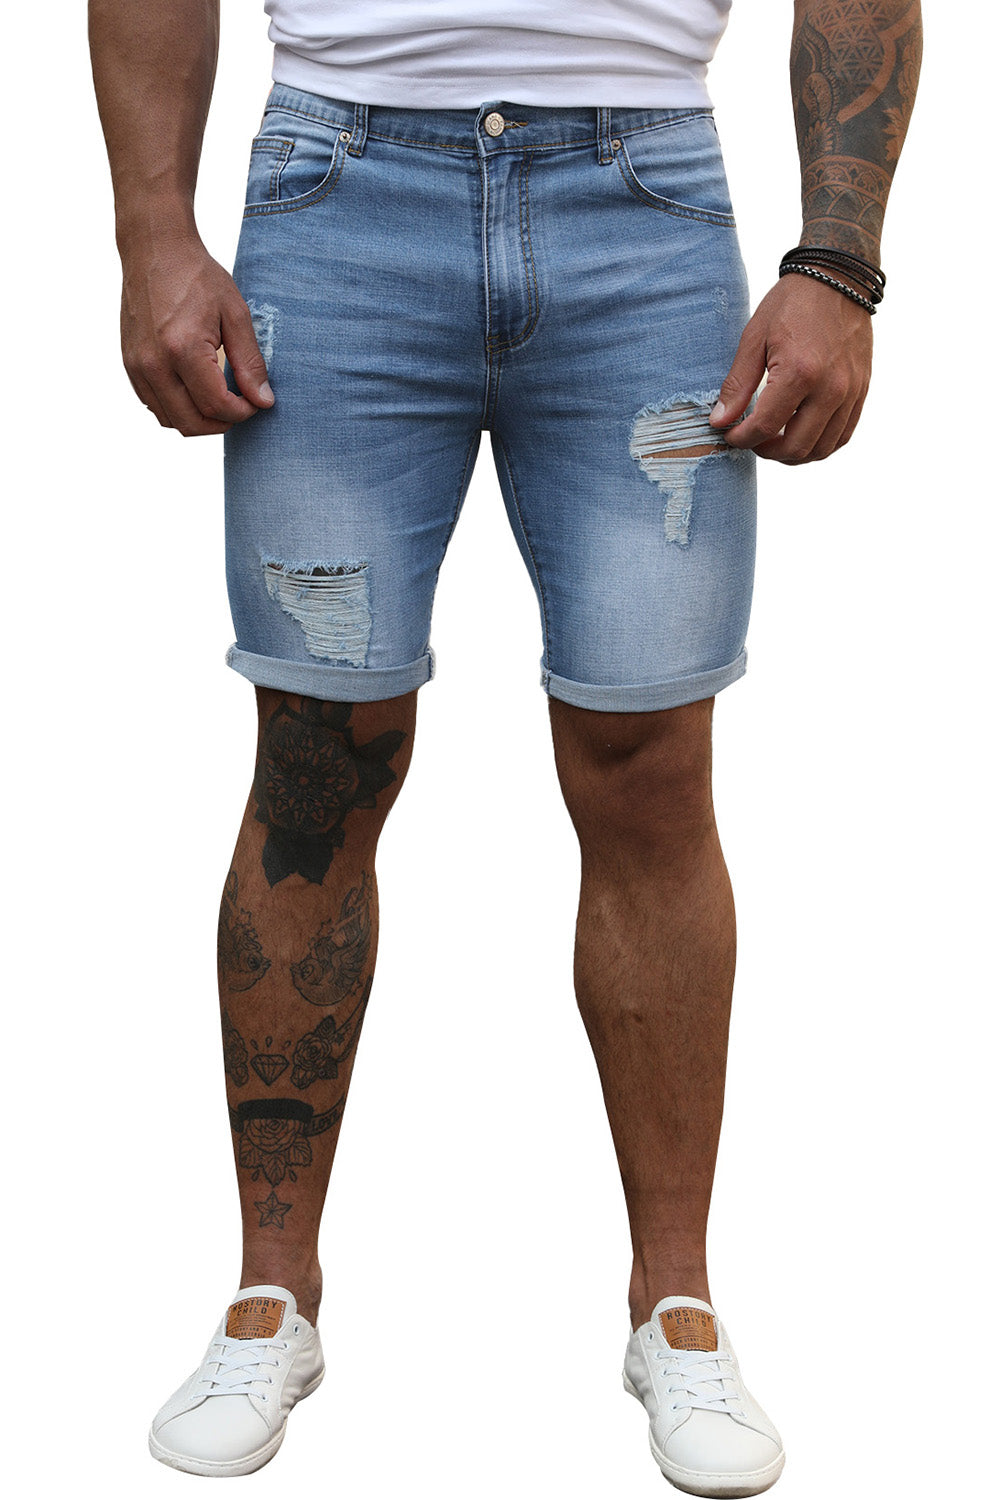 Sky Blue Distressed Low-rise Men's Denim Shorts Men's Pants JT's Designer Fashion